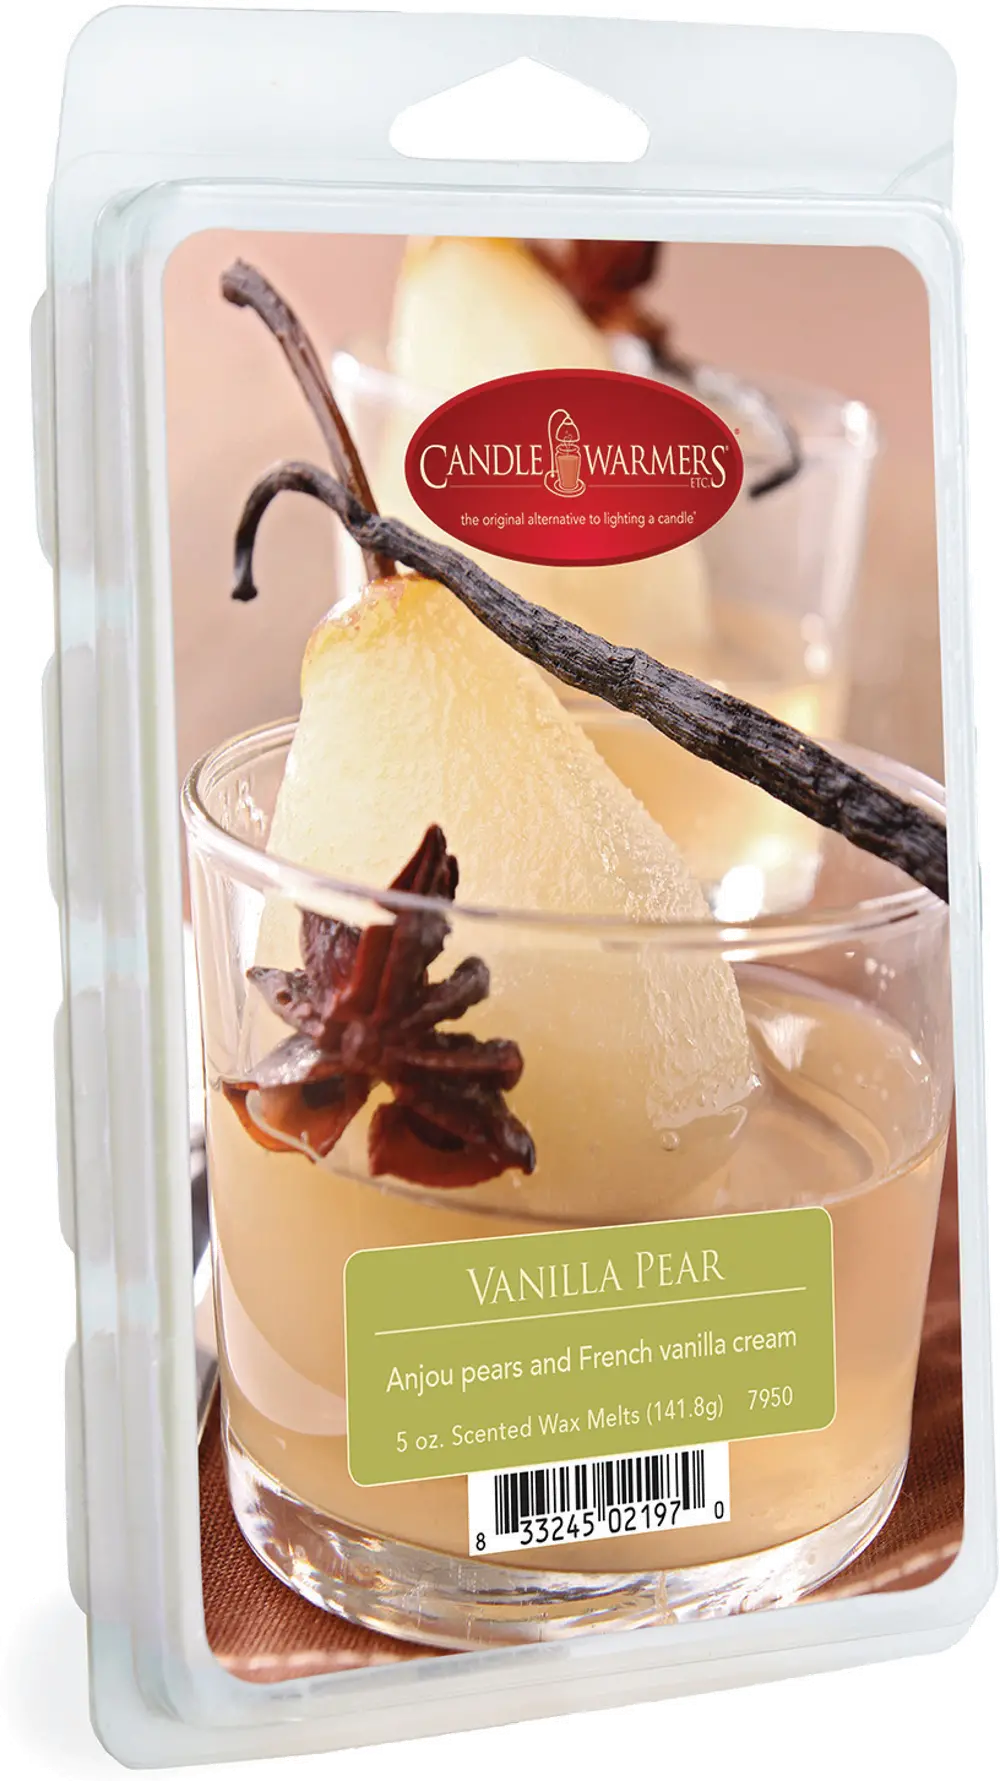 Vanilla Pear 5oz Wax Melt - Candle Warmers-1